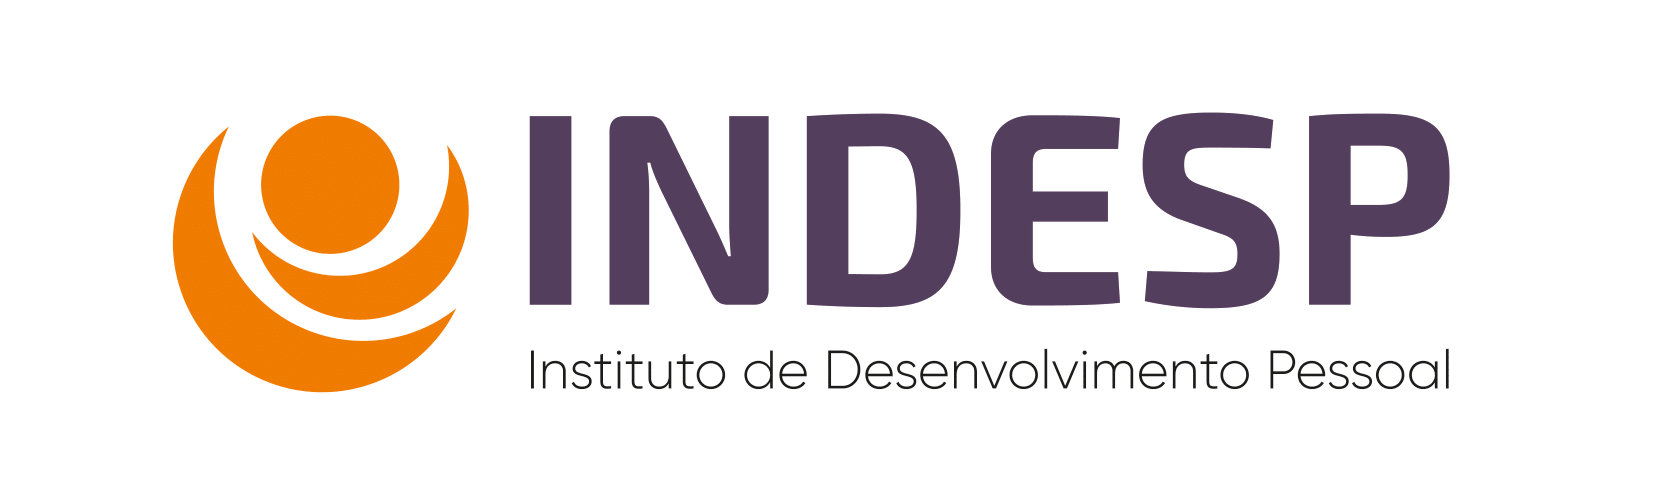 INDESP - Instituto de Desenvolvimento Pessoal